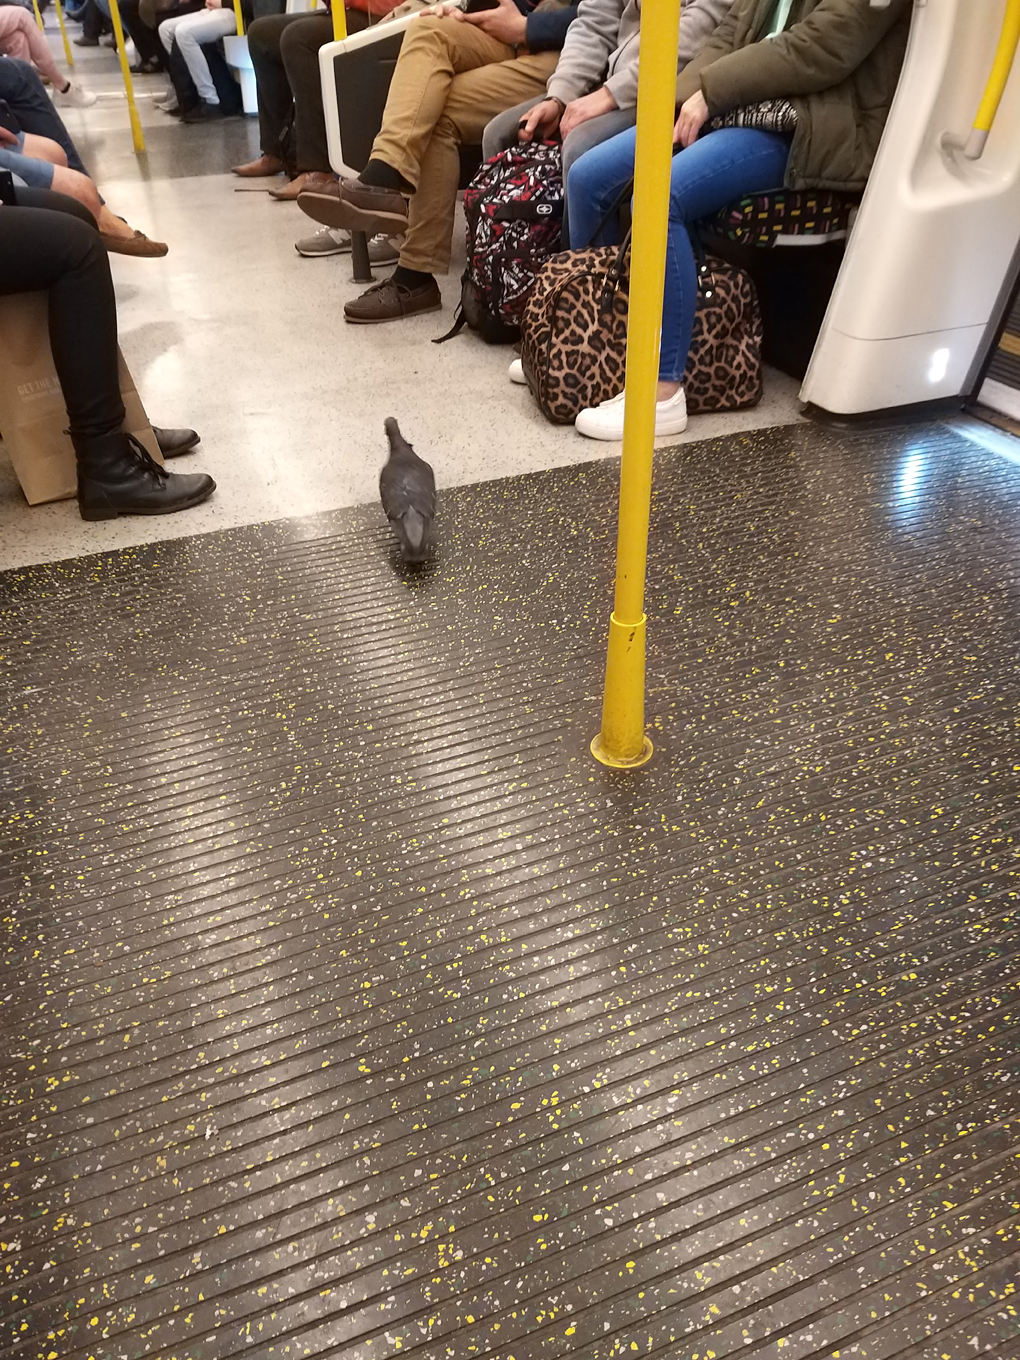 Pigeon in the underground train